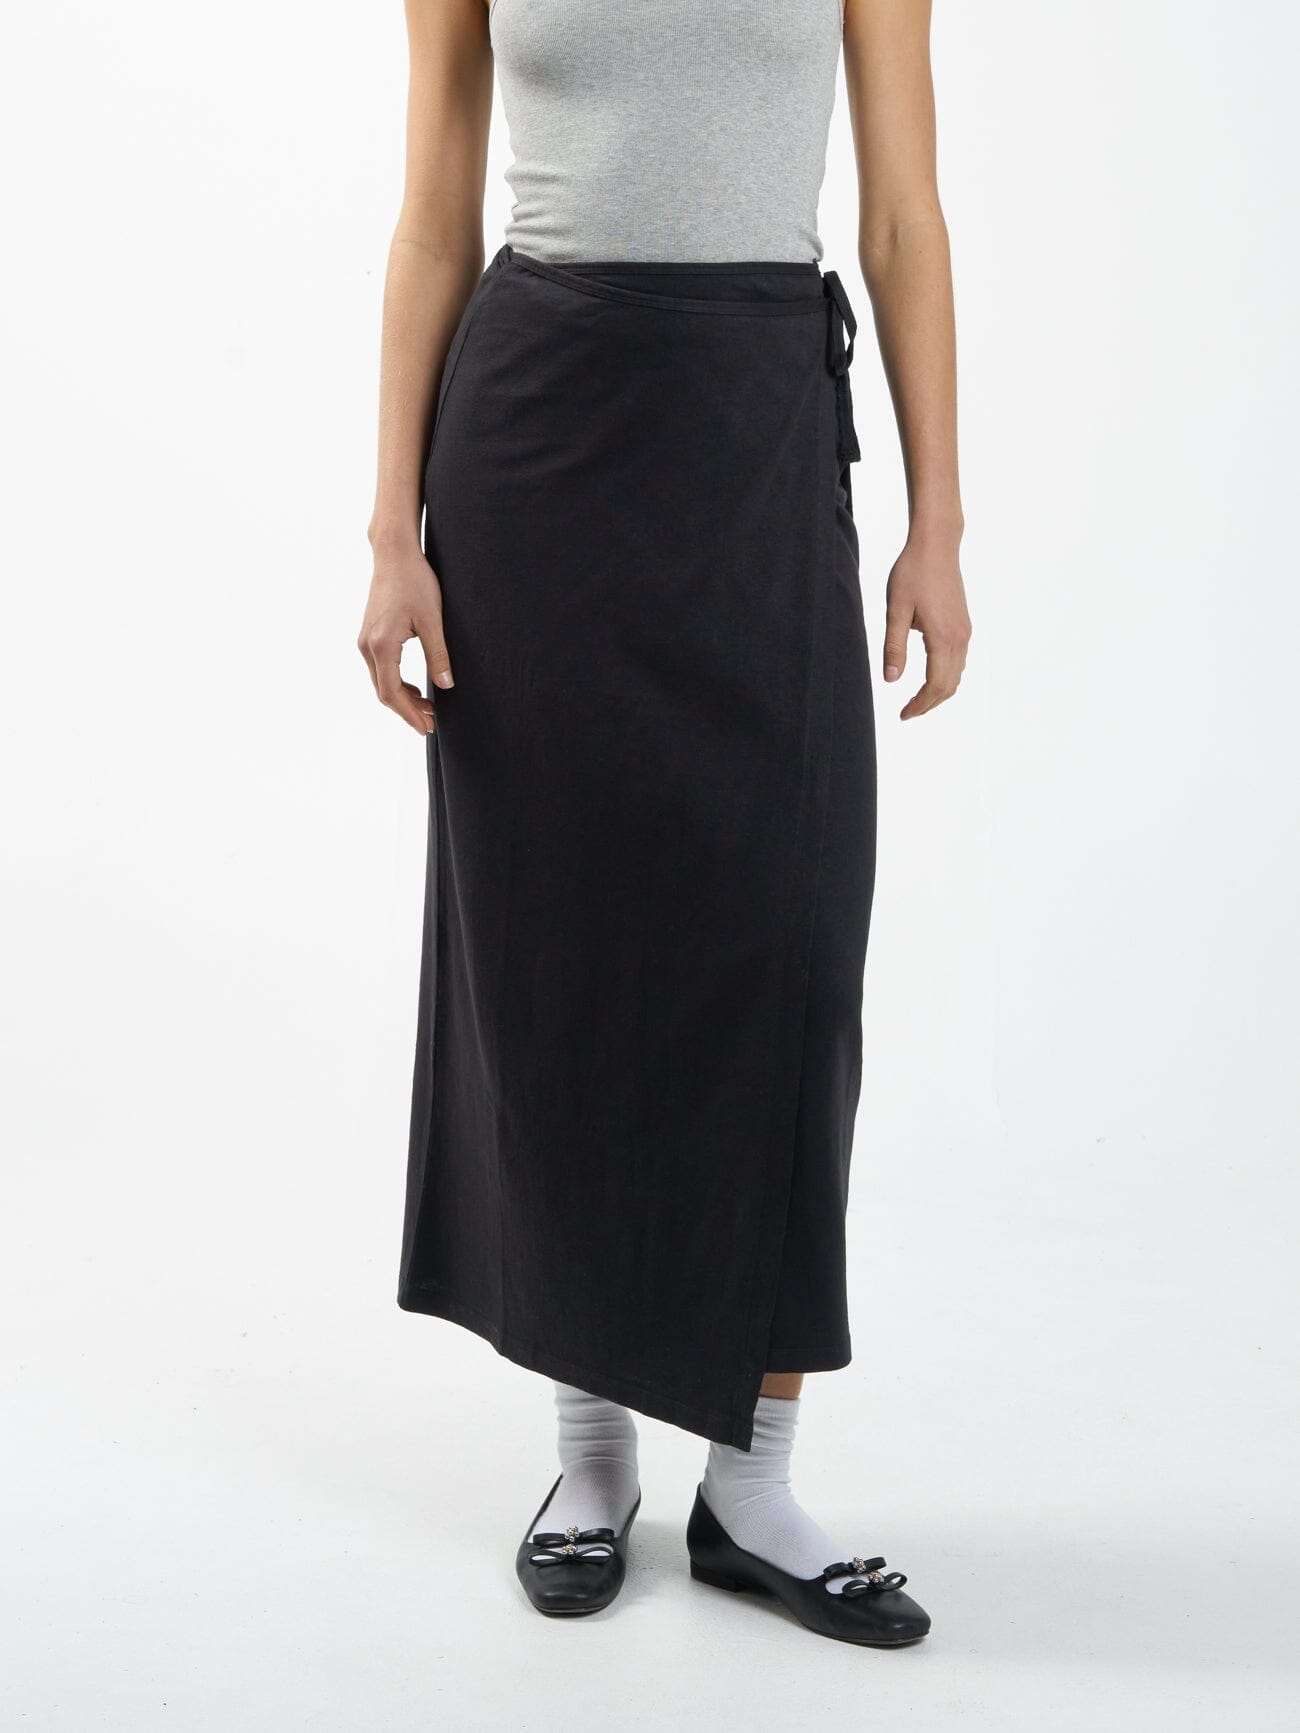 Hemp Wrap Skirt - Black